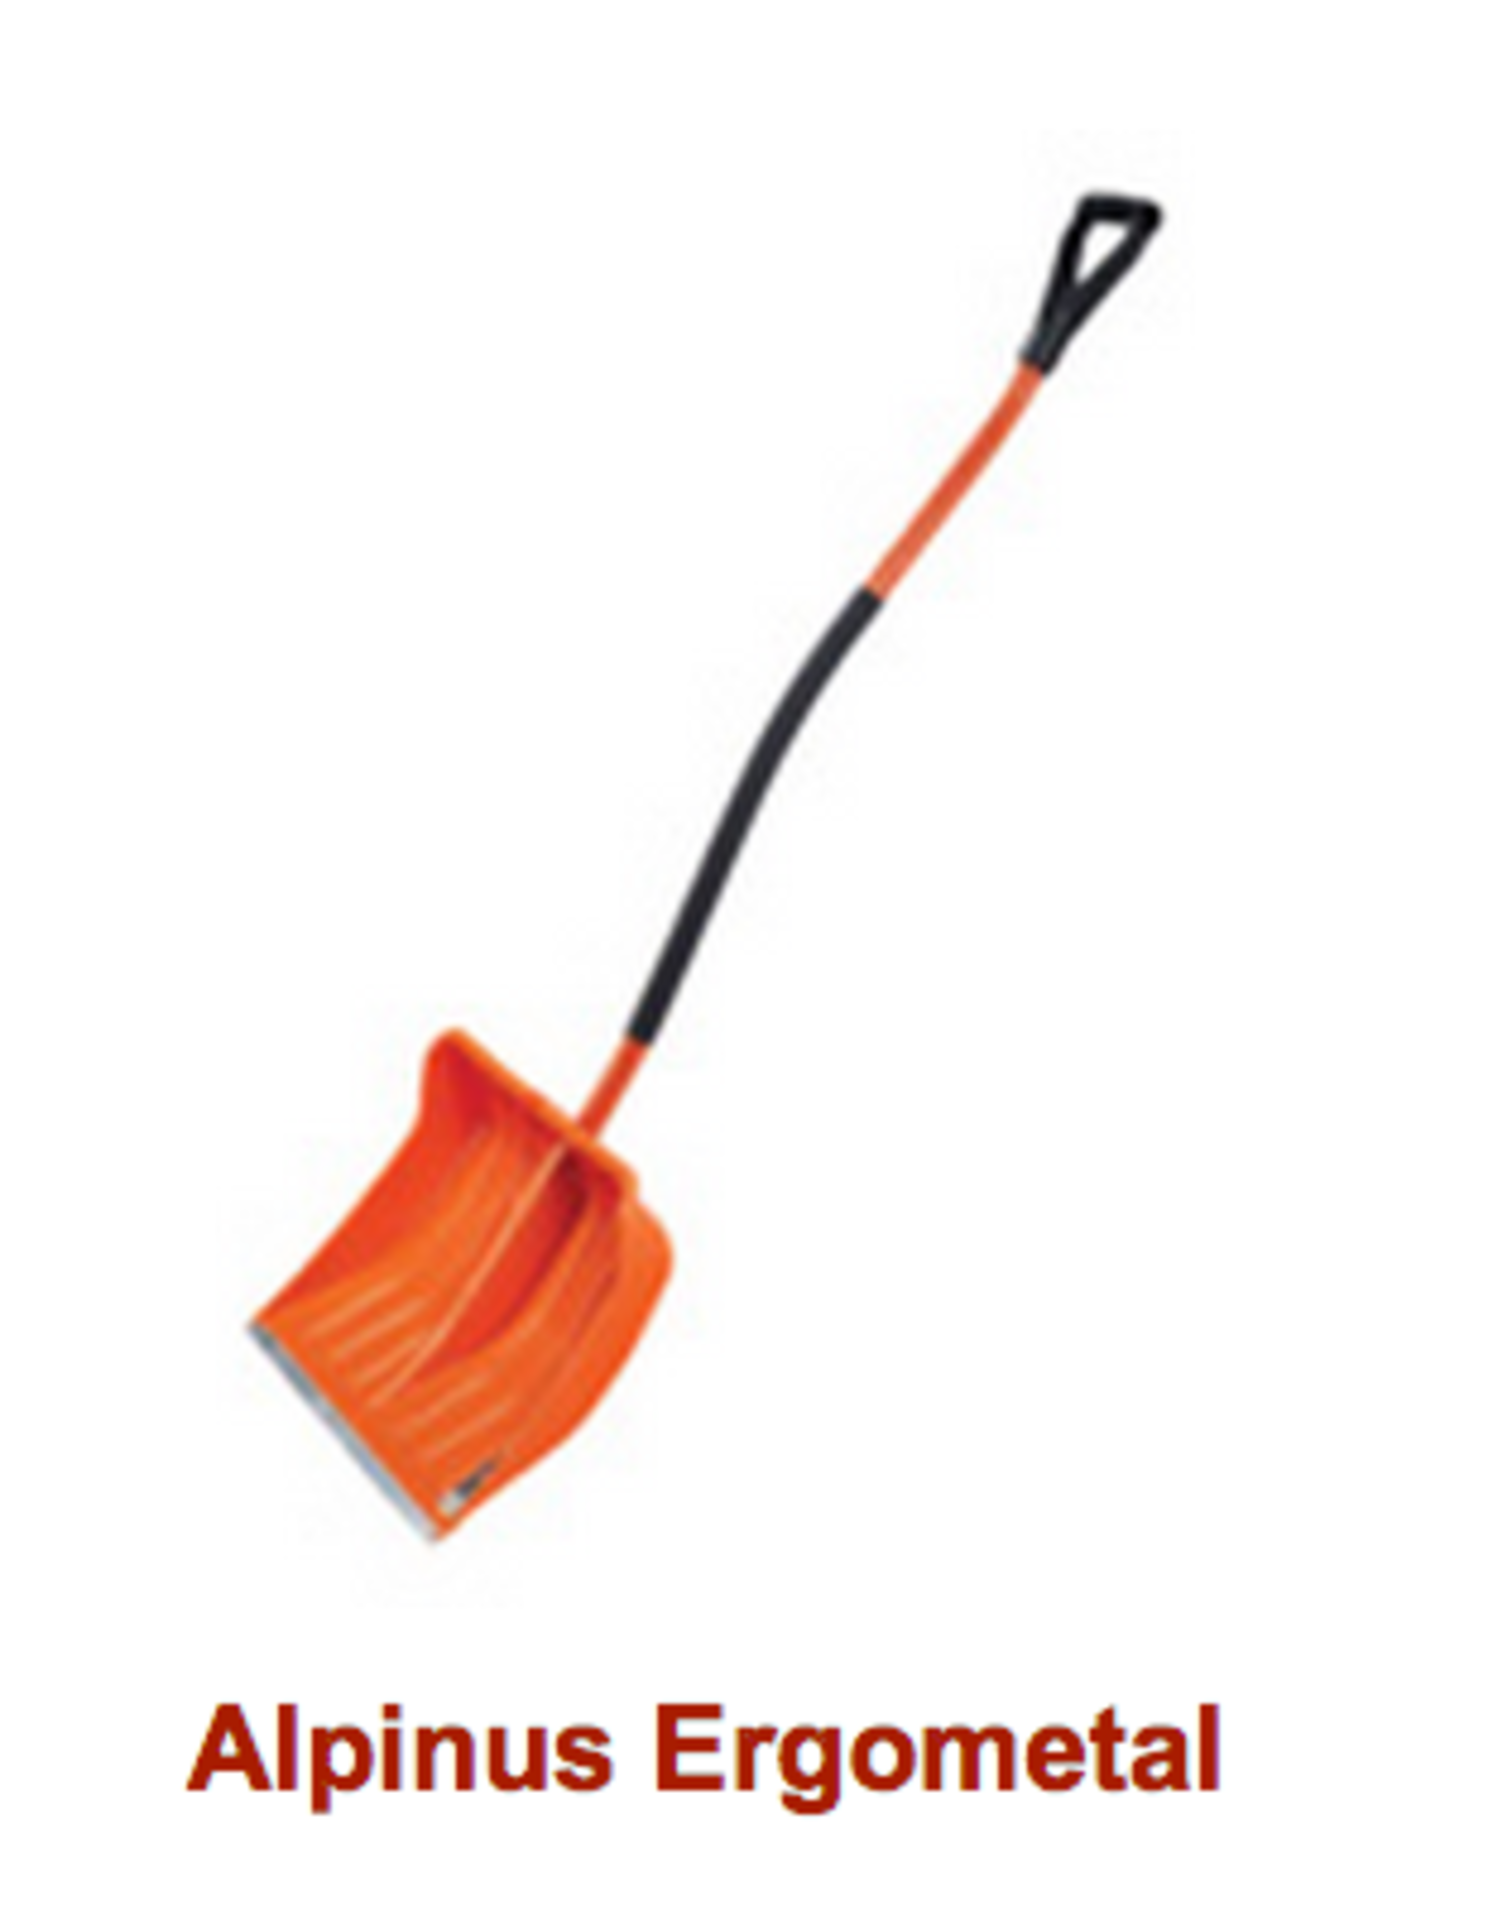 100 x Alpinas Ergometal Multi - Purpose Shovel with metal edged blade